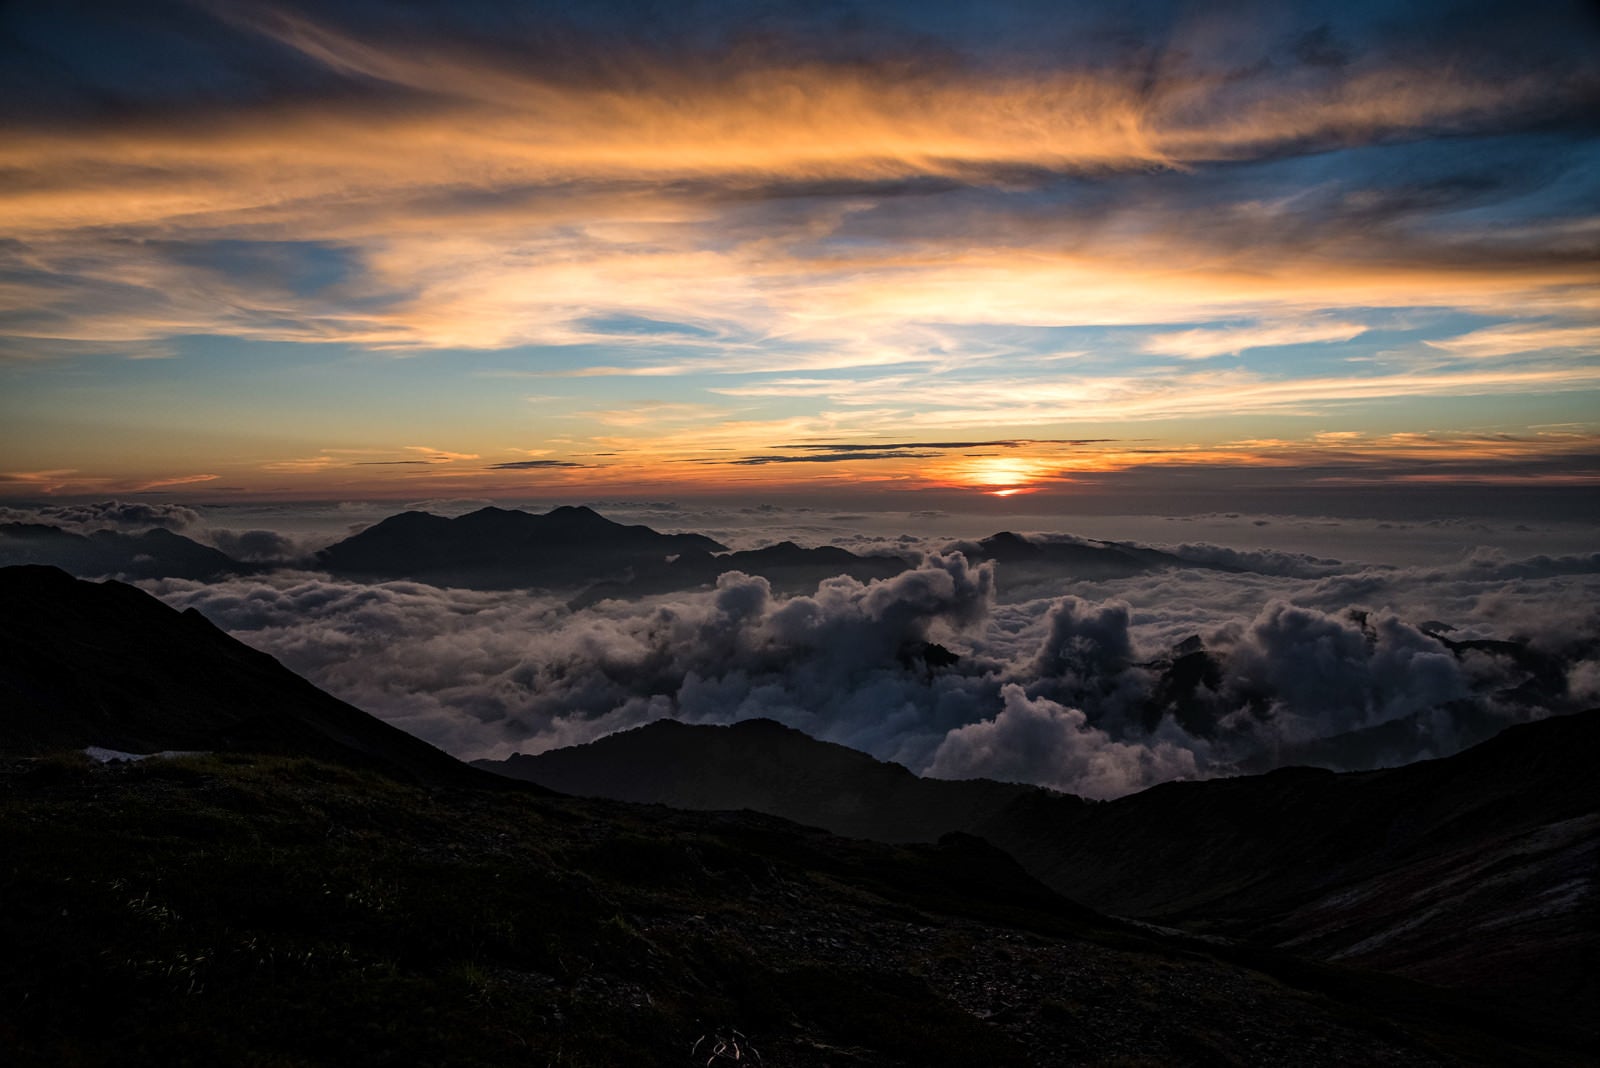 「天狗原から見える夕日」の写真